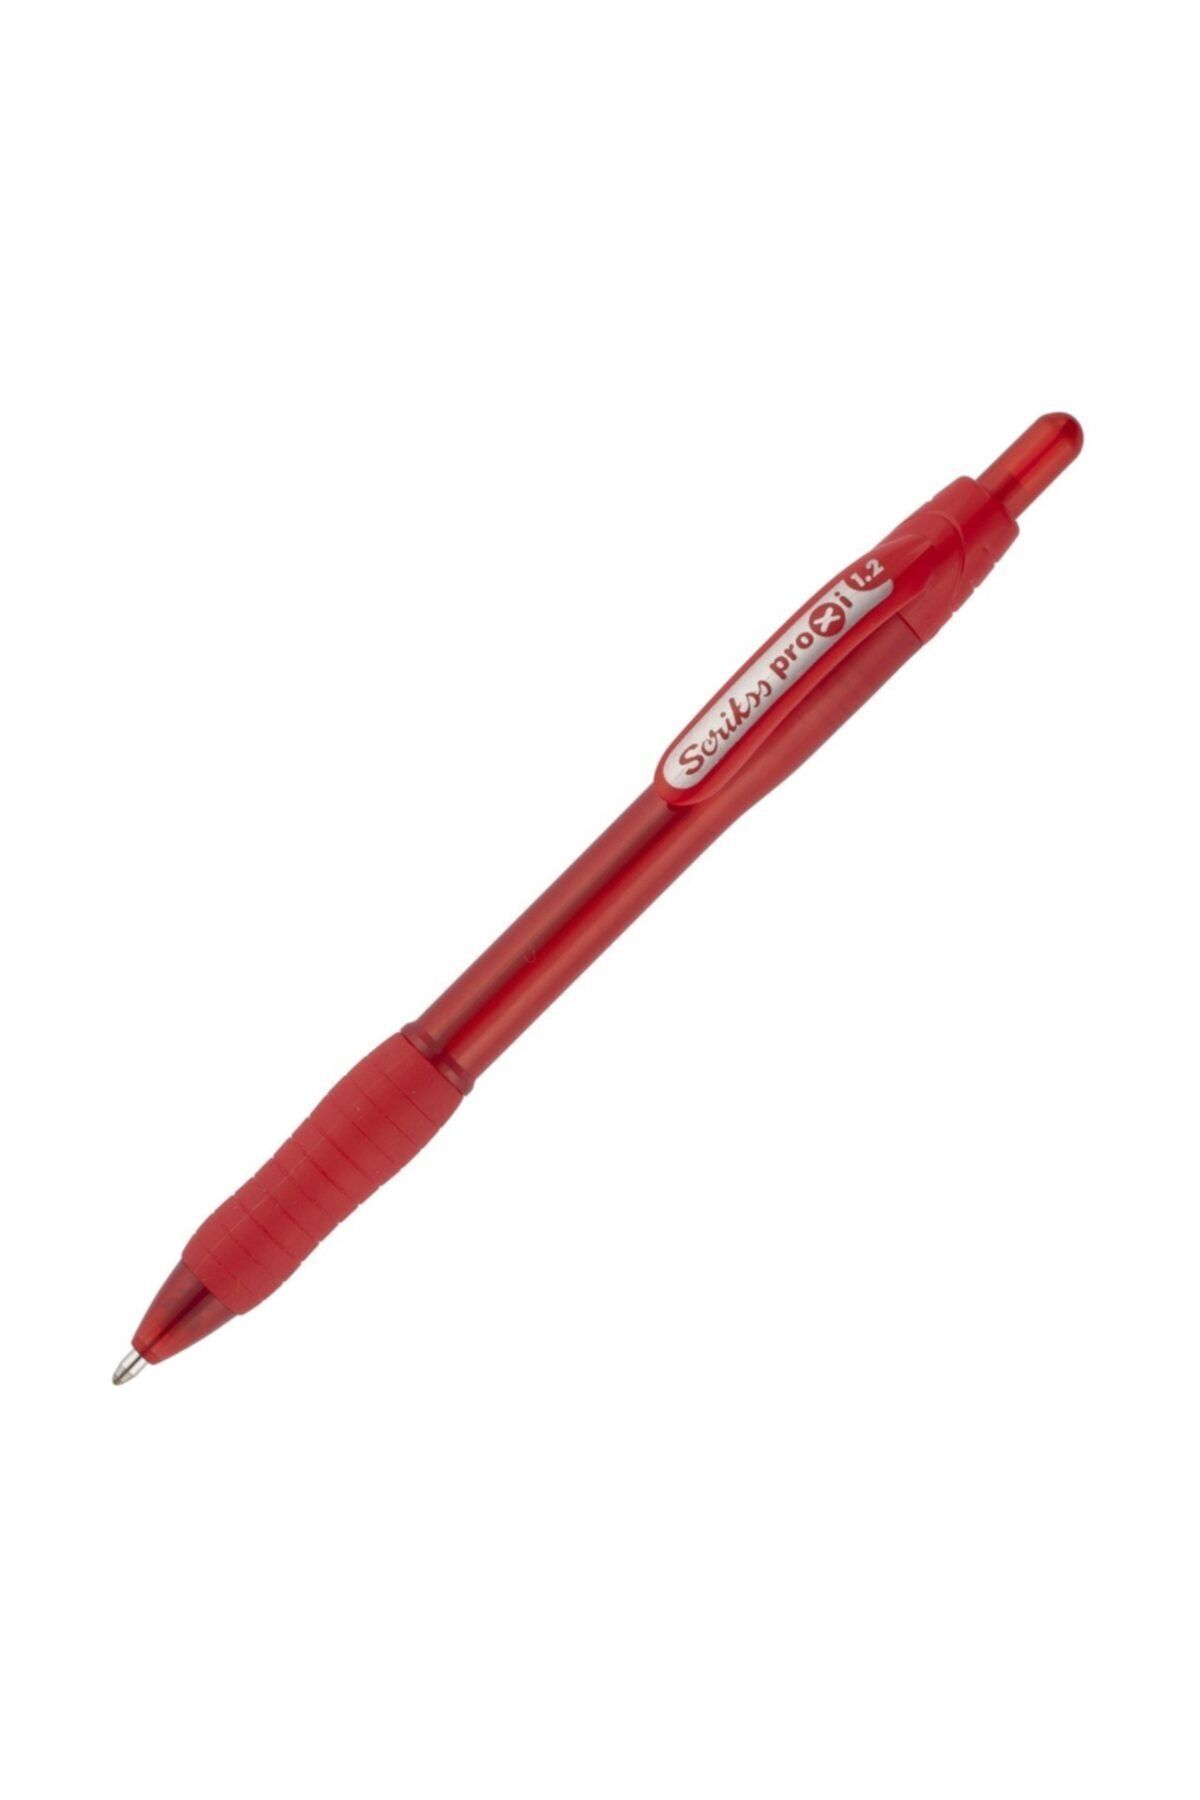 Scrikss Office Proxi Tükenmez Kalem Kırmızı